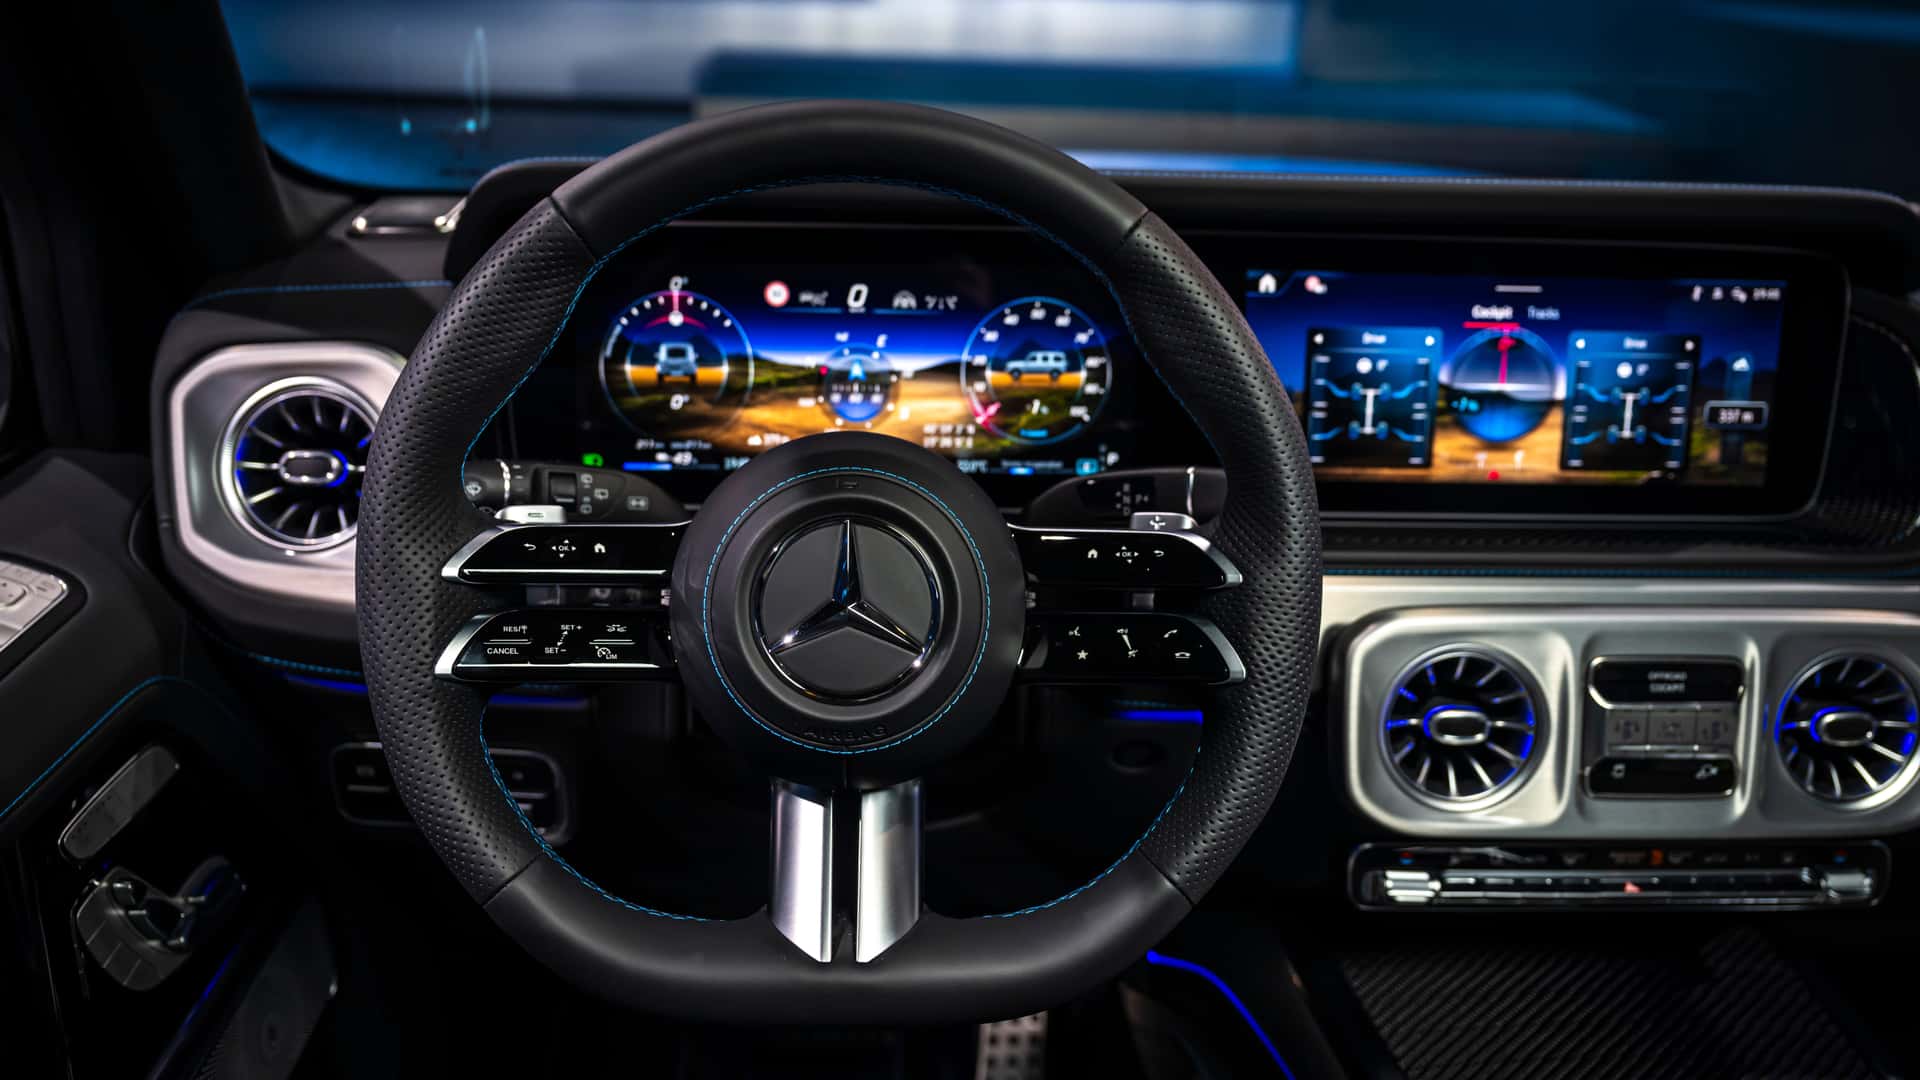 Mercedes-Benz G-Class thuần điện chính thức ra mắt: Thiết kế gần như bê nguyên bản thường, mạnh tới 579 mã lực, nhưng đây mới là con số ấn tượng nhất - ảnh 30